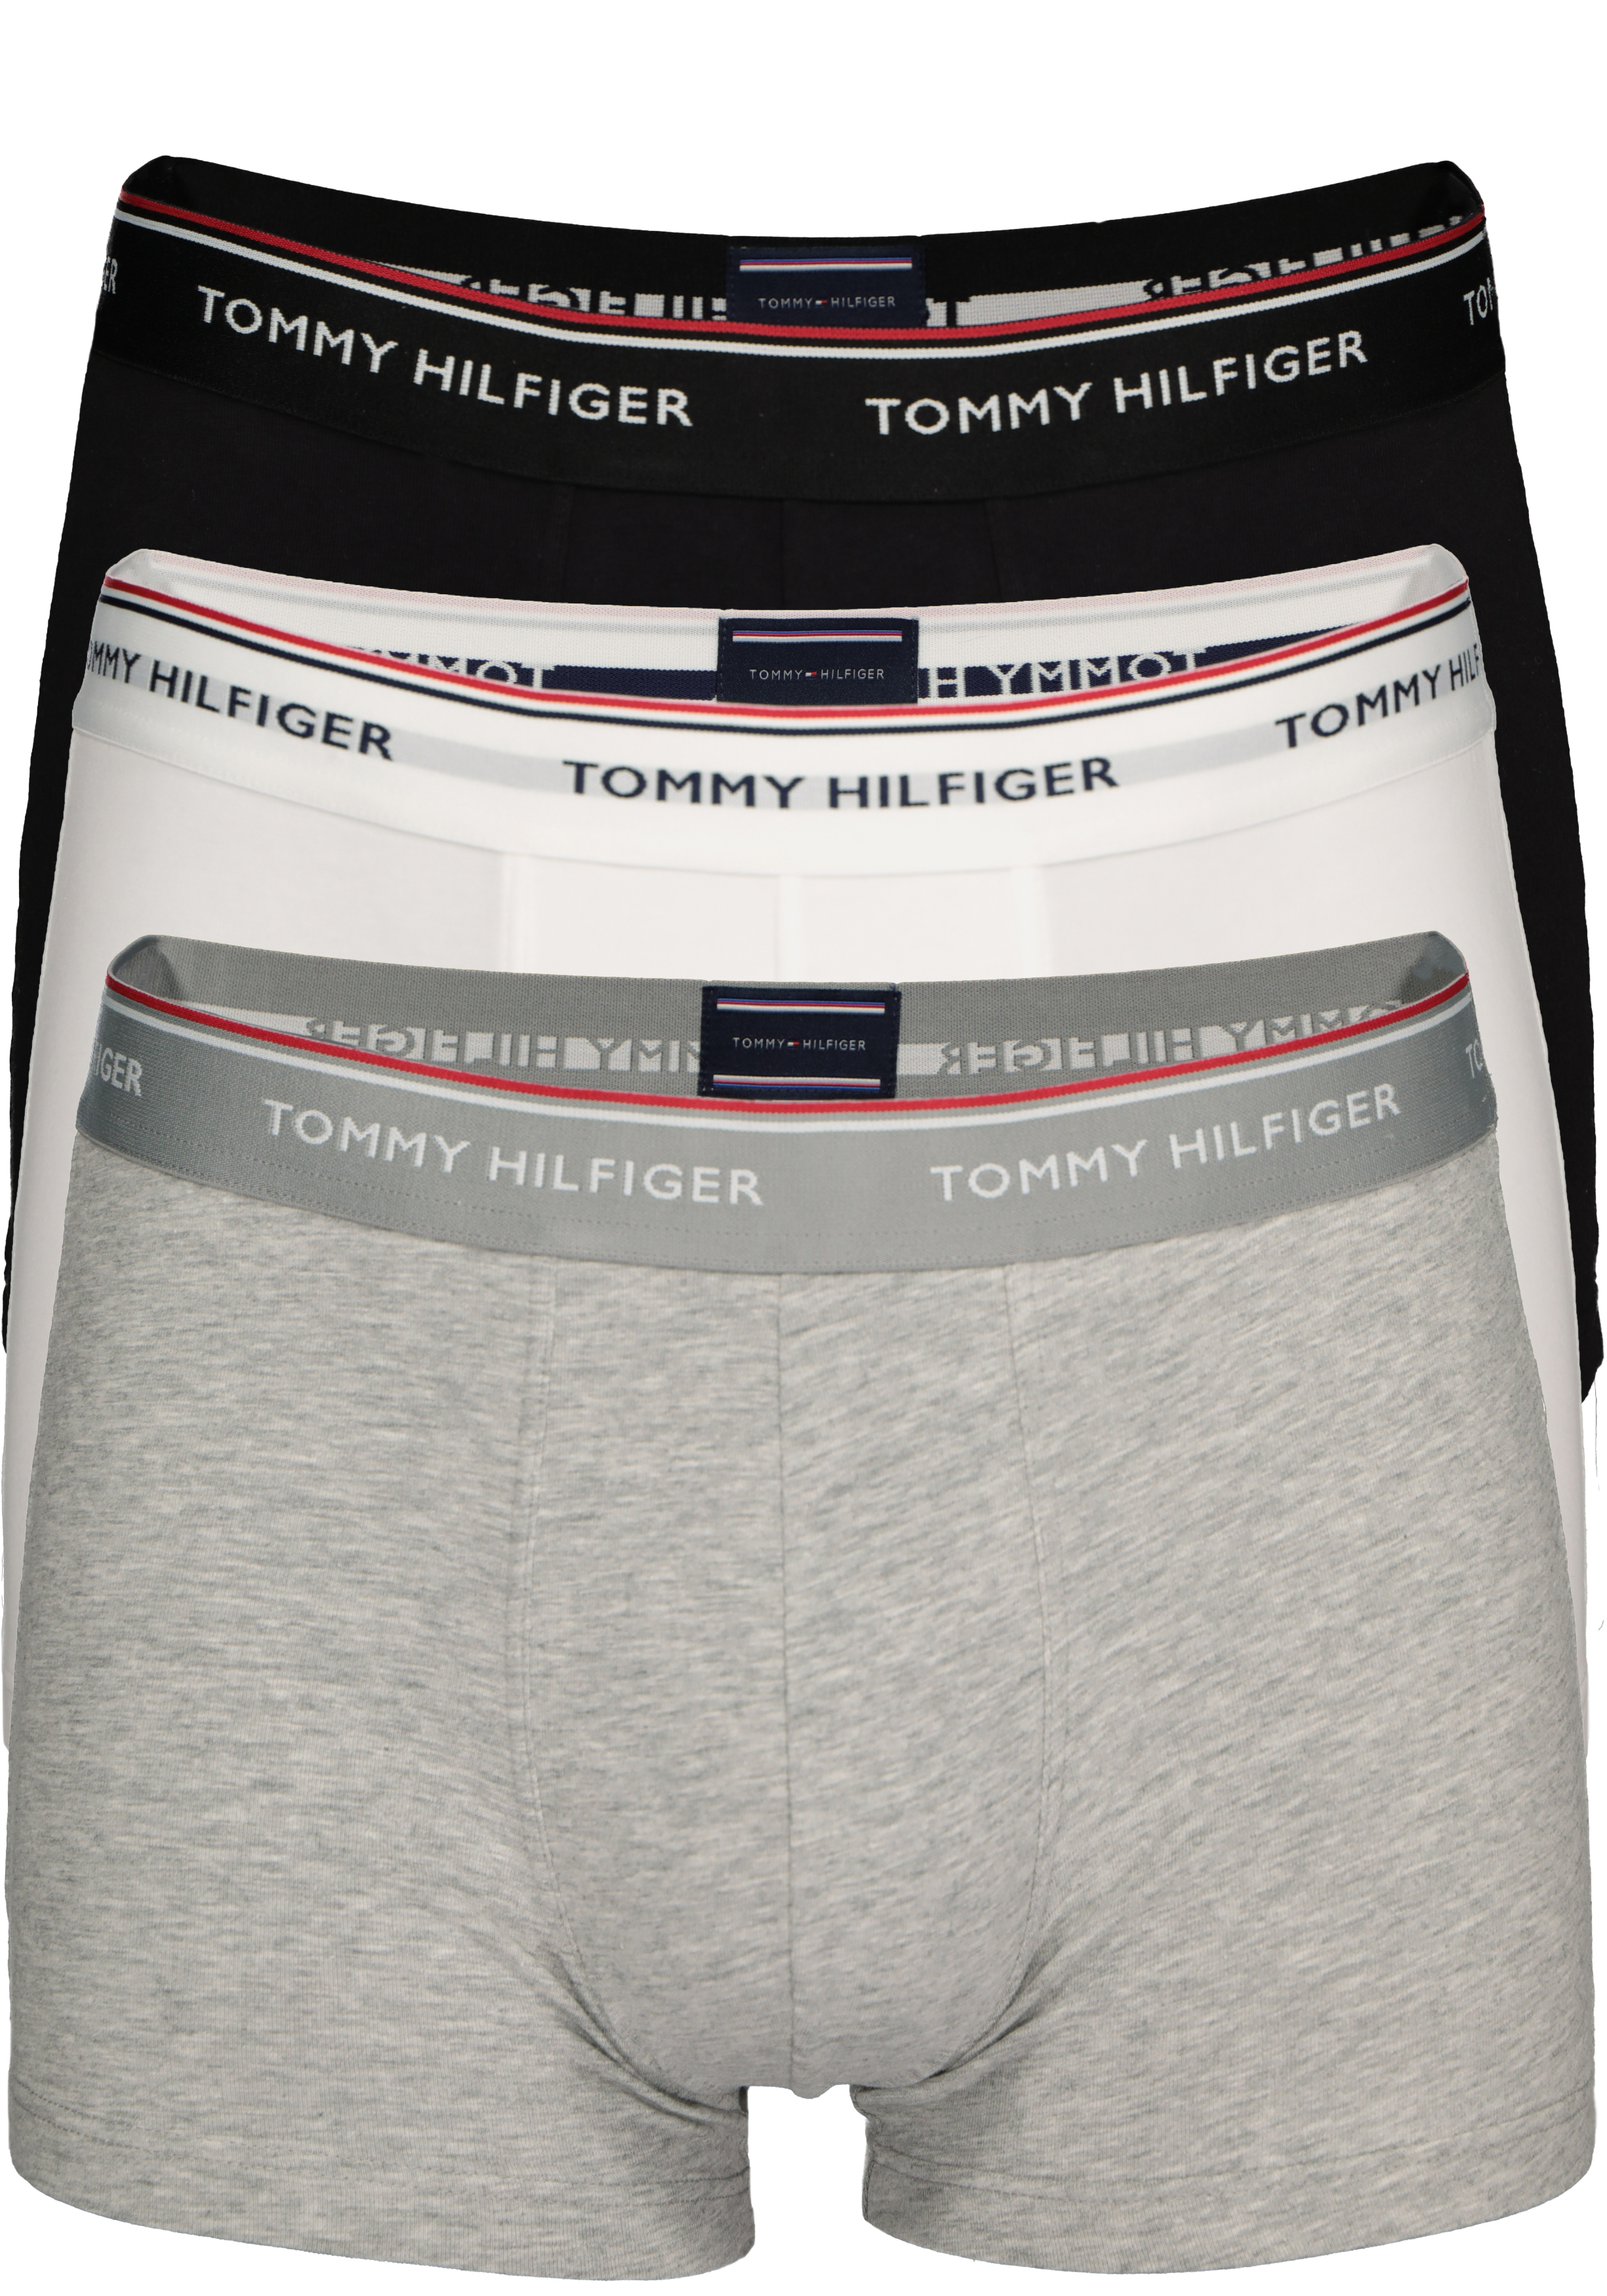 Om te mediteren kleding stof Diverse Tommy Hilfiger boxershorts (3-pack), zwart- wit en grijs - Gratis bezorgd